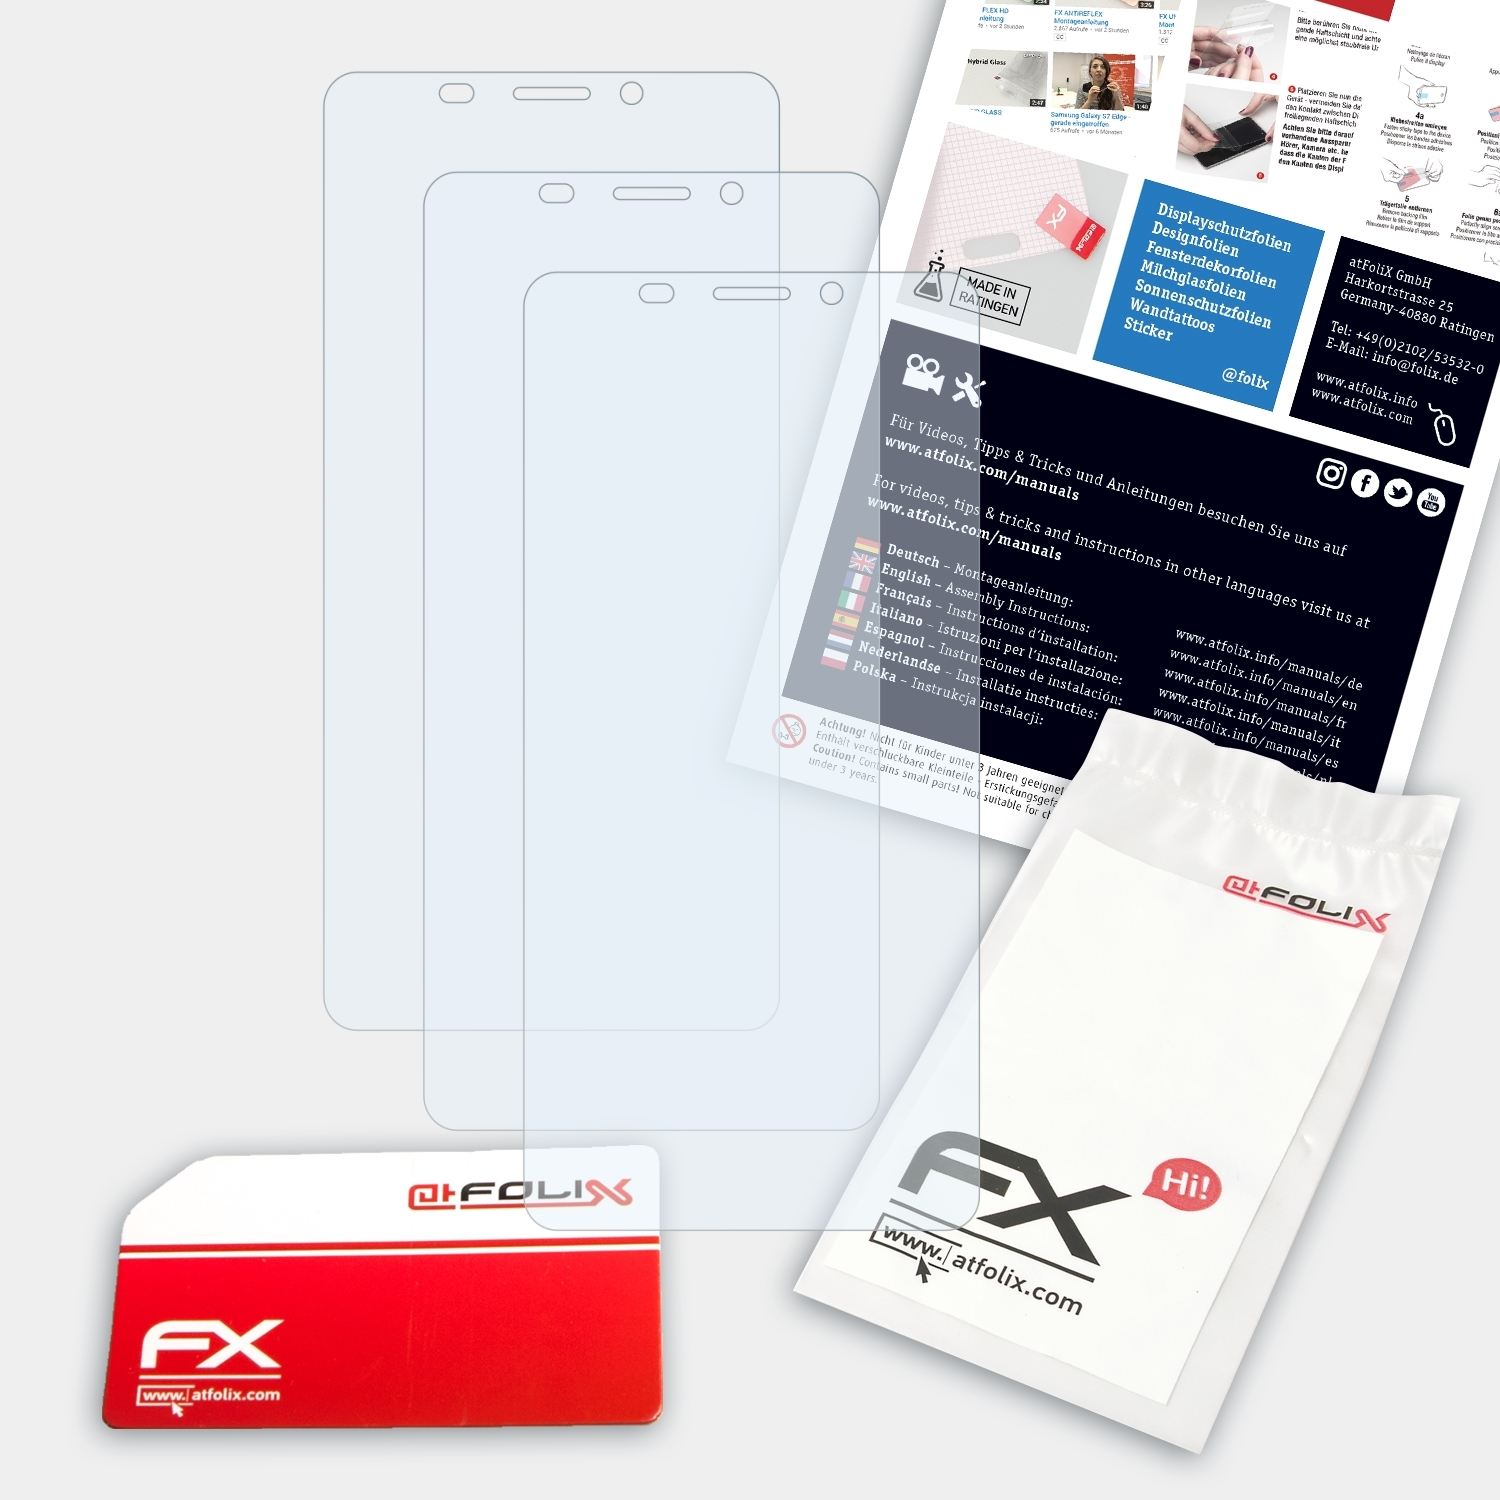 ATFOLIX 3x FX-Clear Displayschutz(für Doopro Pro) P1